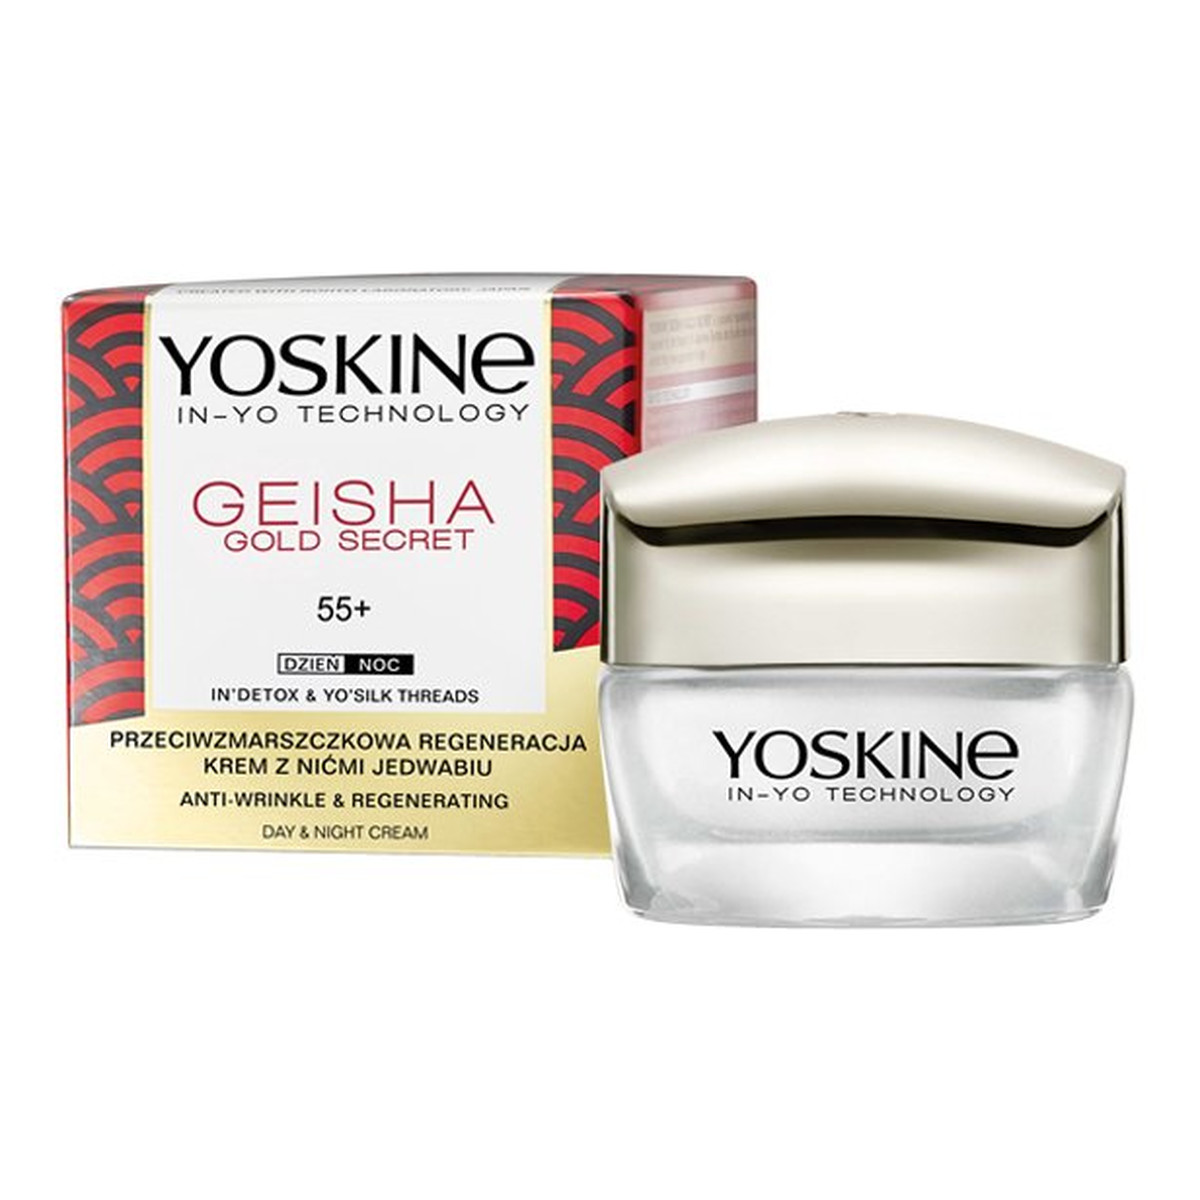 Yoskine Geisha Gold Secret 55+ krem z nićmi jedwabiu przeciwzmarszczkowa regeneracja na dzień i na noc 50ml